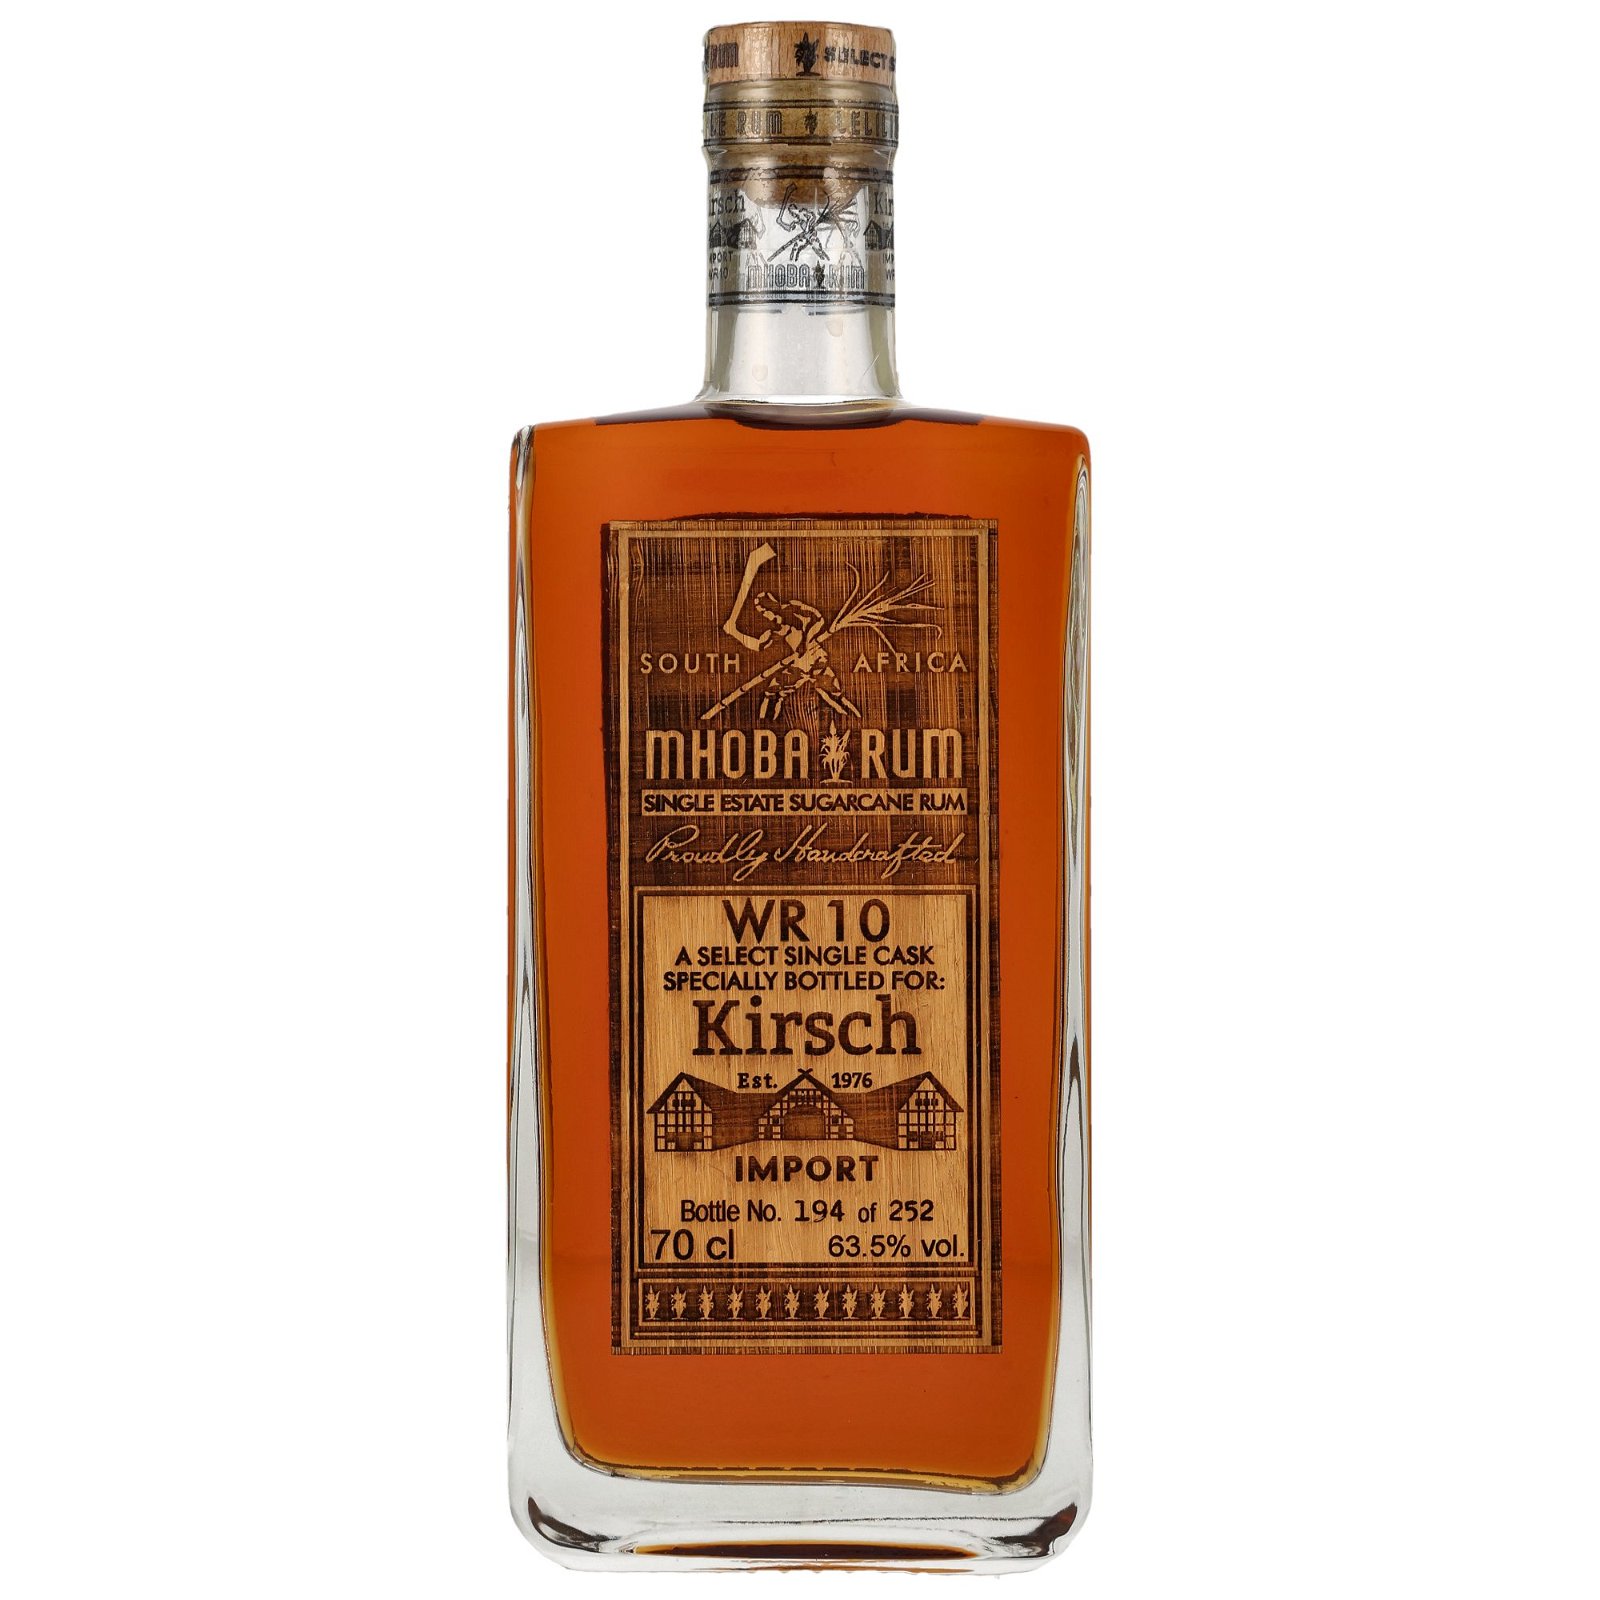 Mhoba Rum 2019 WR 10 Single Cask bottled for Kirsch